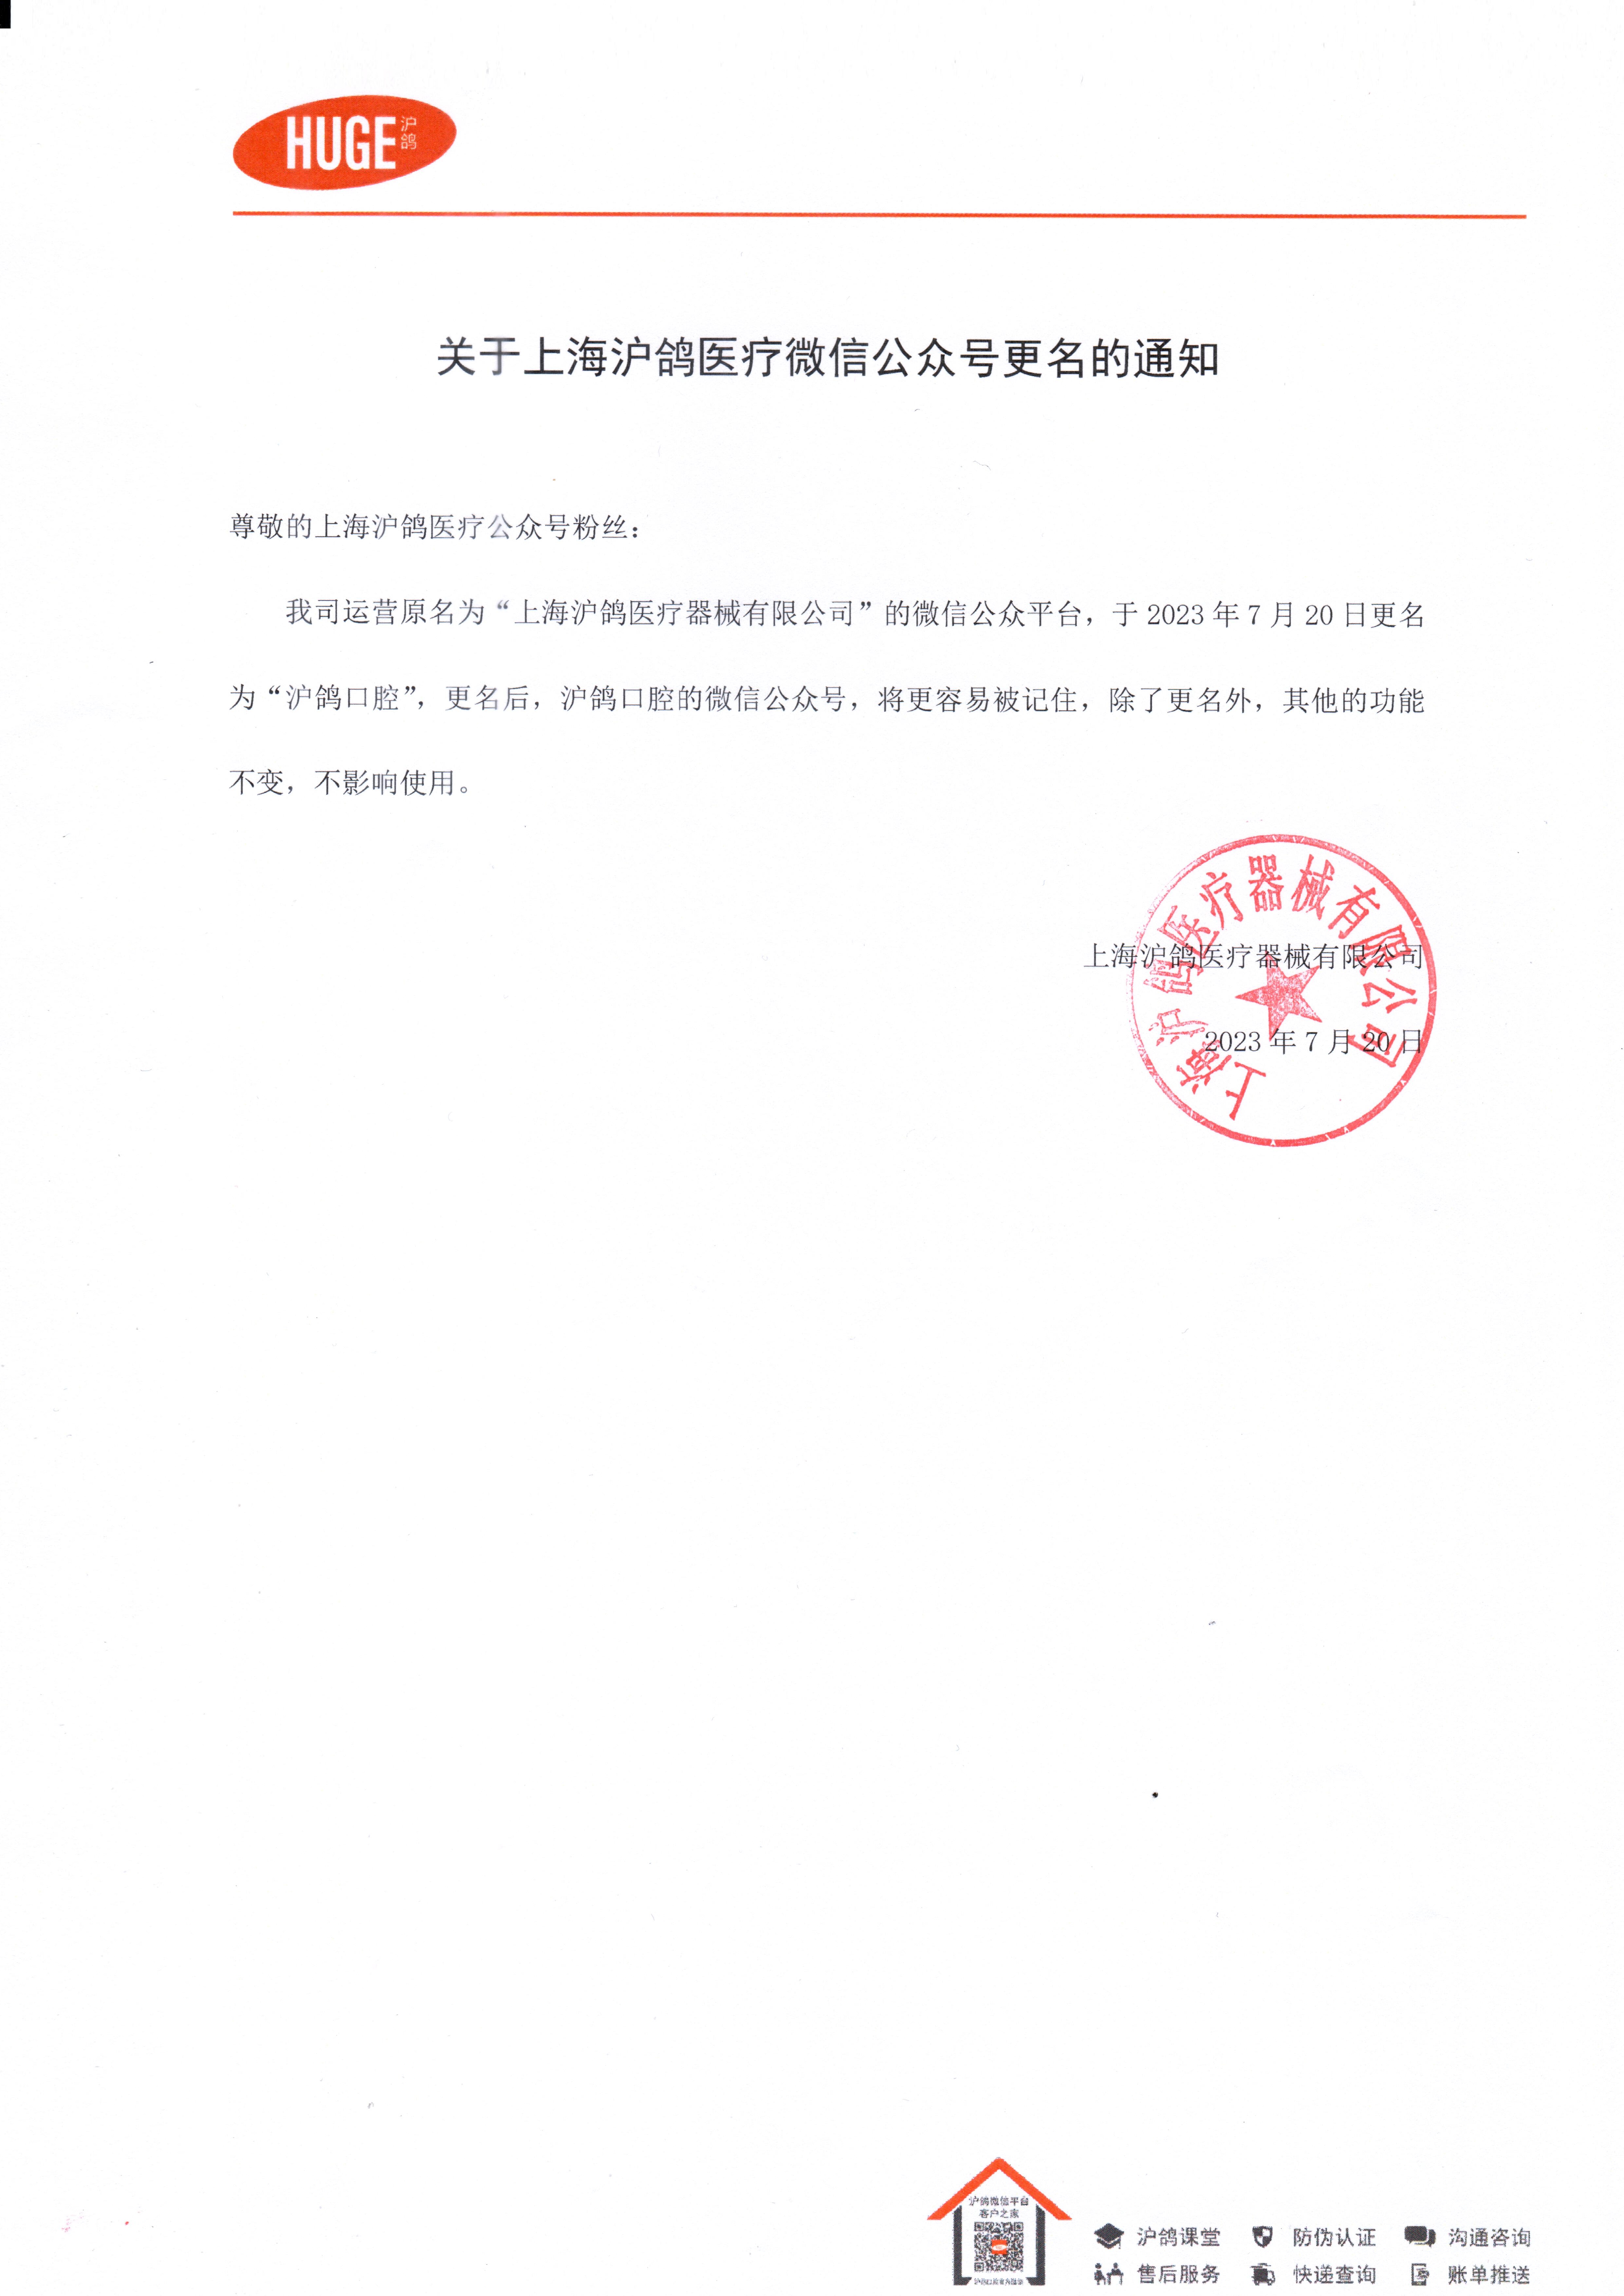 關于上海滬鴿醫療微信公眾號更名的通知